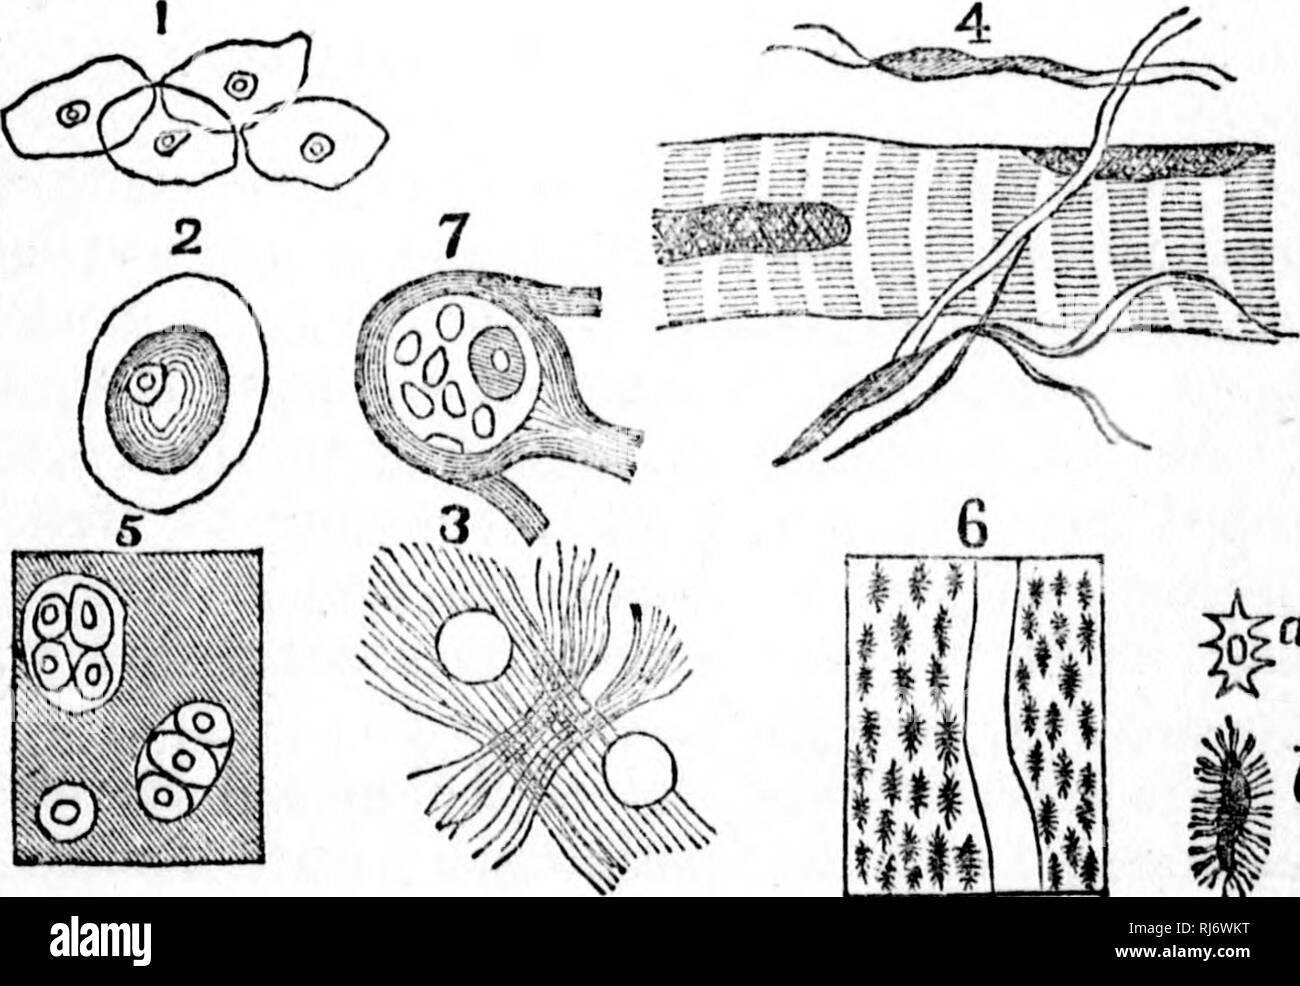 . Manuale di zoologia [microformati] : con esempi di specie canadesi, recenti e fossili :. Zoologia; Invertebrati; Zoologie; Invertébrés. ^ b tessuti dell'animale. bianco di eti'ir; e, con aULi-lit modifica:? E aggiunta di sostanze minerali, è in grado di pellicce- nishino; il materiale di tutti i o&lt;2;un3 degli animali. Albume è strettamente o^i^anic sostanza, che si verificano solo come un componente di esseri viventi, e prodotta in prima istanza in cellule di piante. Si tratta di un composto di carbonio, ossigeno, idrogeno e nitro- gen, con un minuto percentuale di zolfo. In conseguenza della Foto Stock